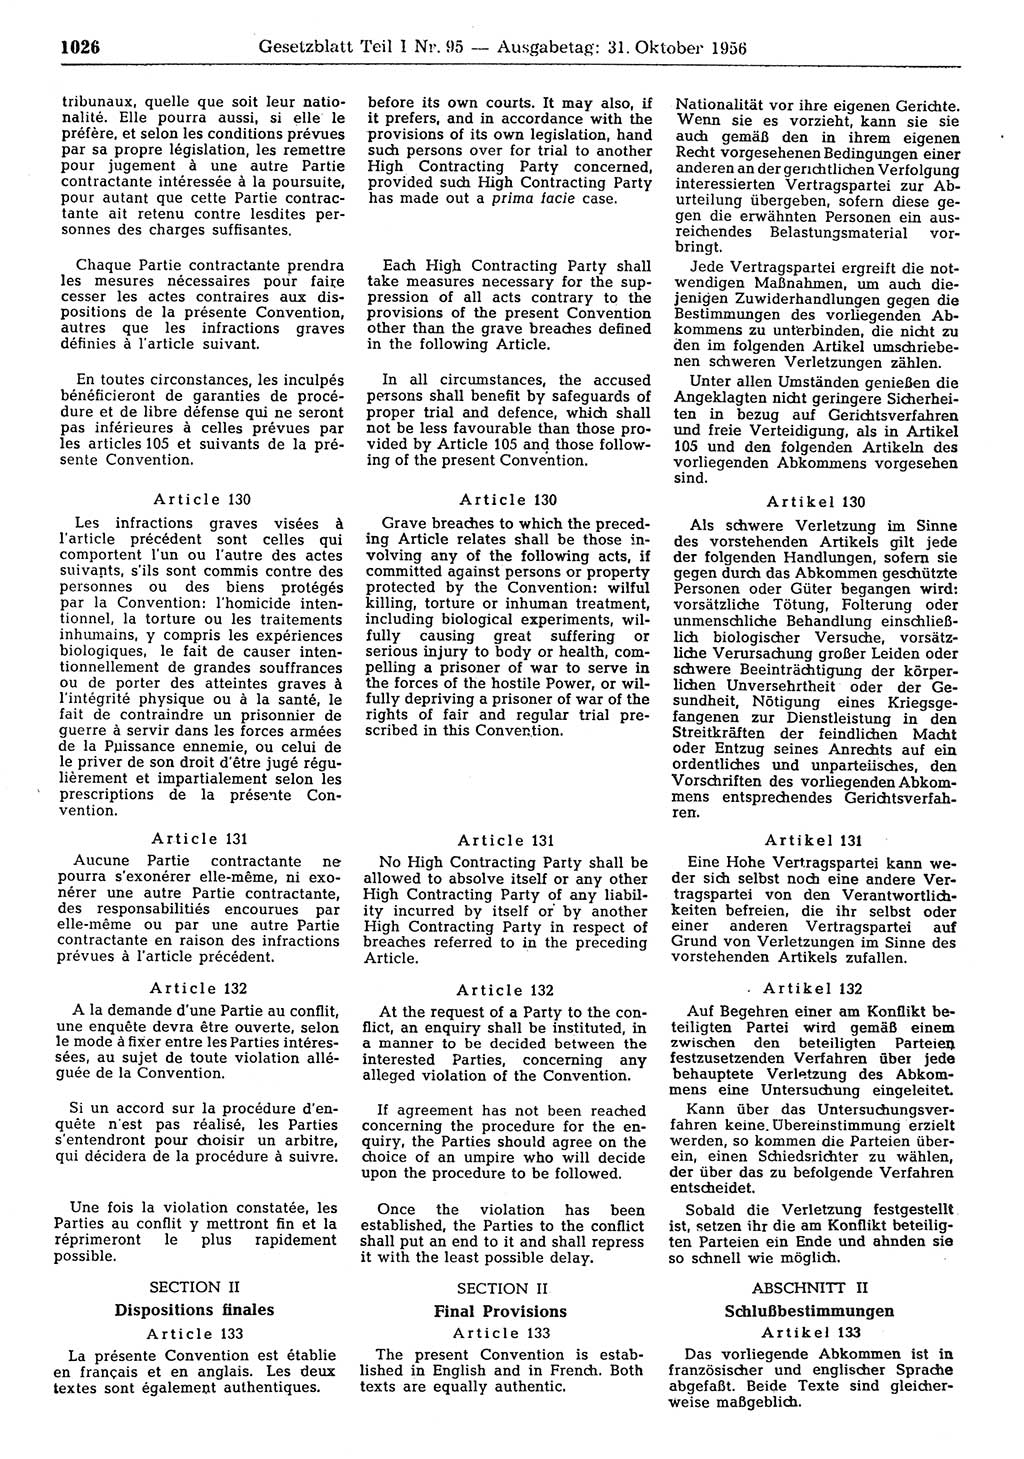 Gesetzblatt (GBl.) der Deutschen Demokratischen Republik (DDR) Teil Ⅰ 1956, Seite 1026 (GBl. DDR Ⅰ 1956, S. 1026)